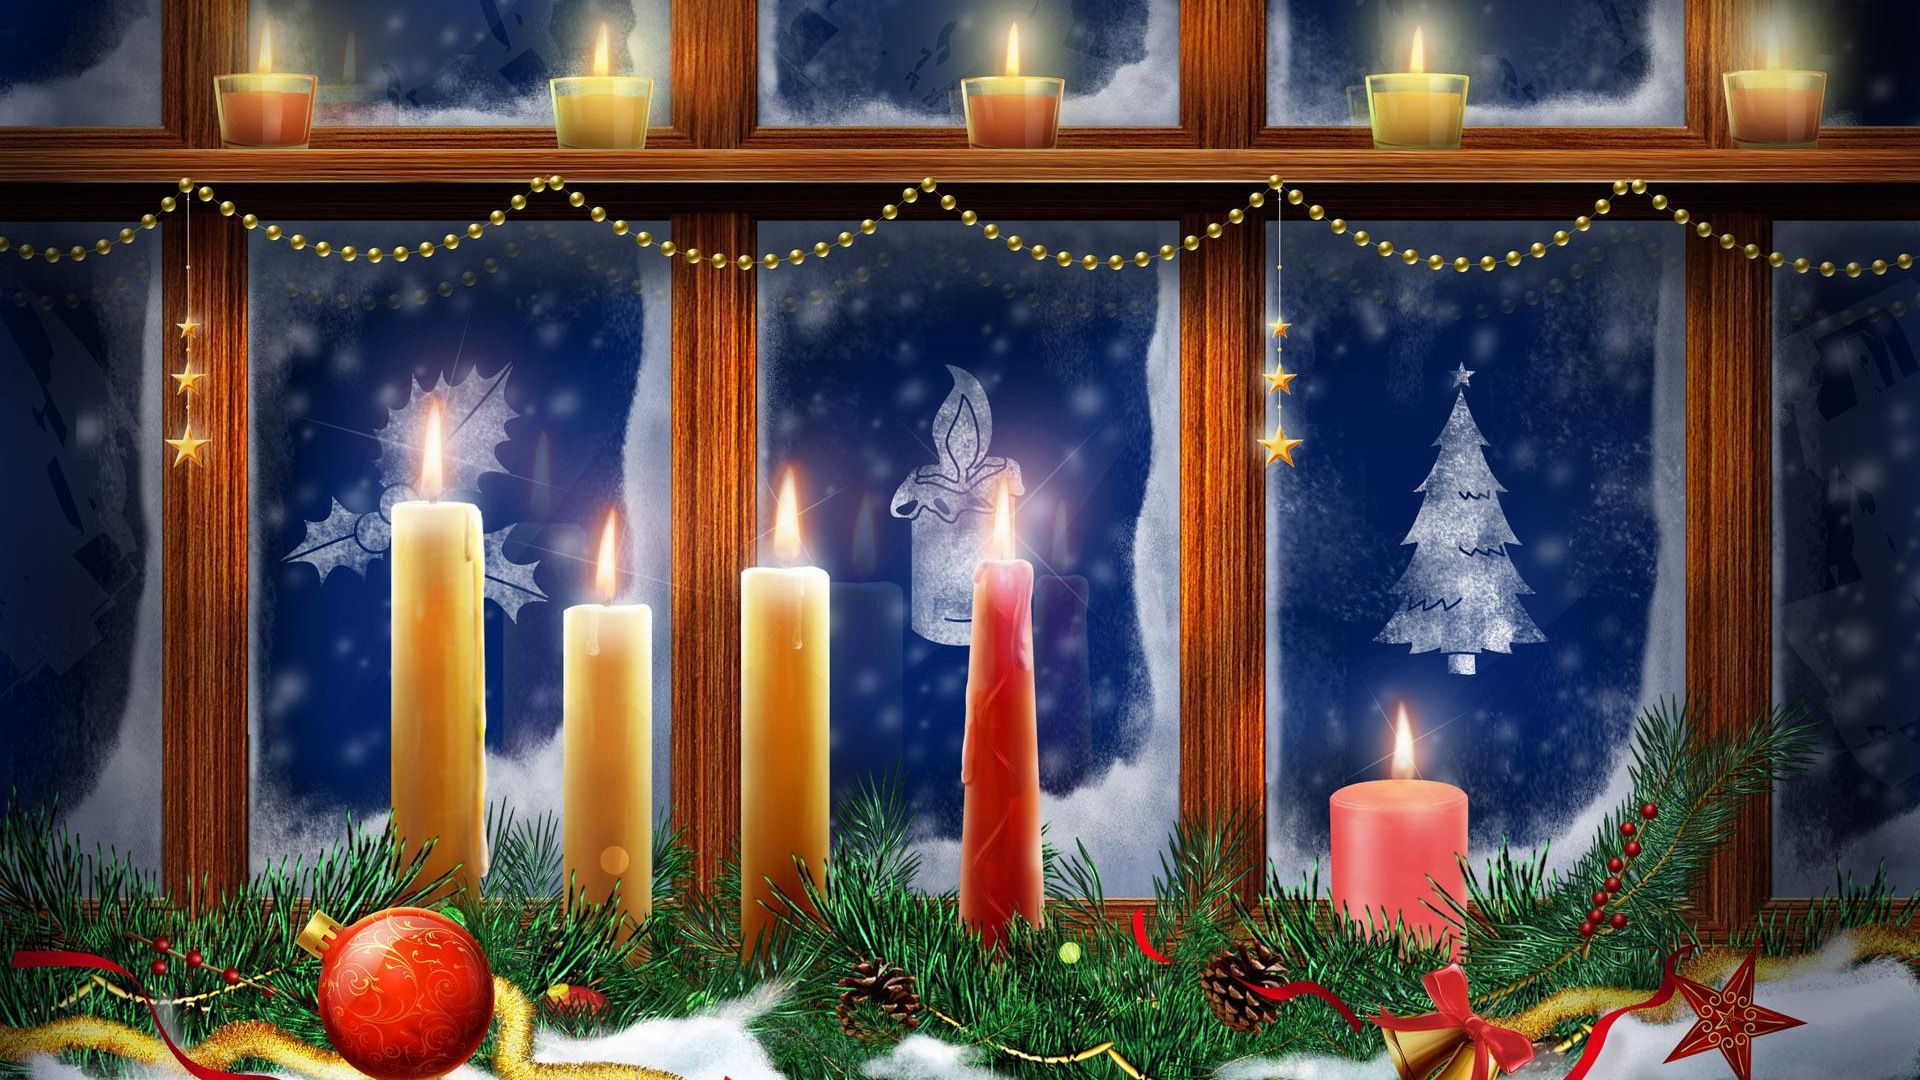 Merry Christmas HD Wallpaper destacados #14 - 1920x1080